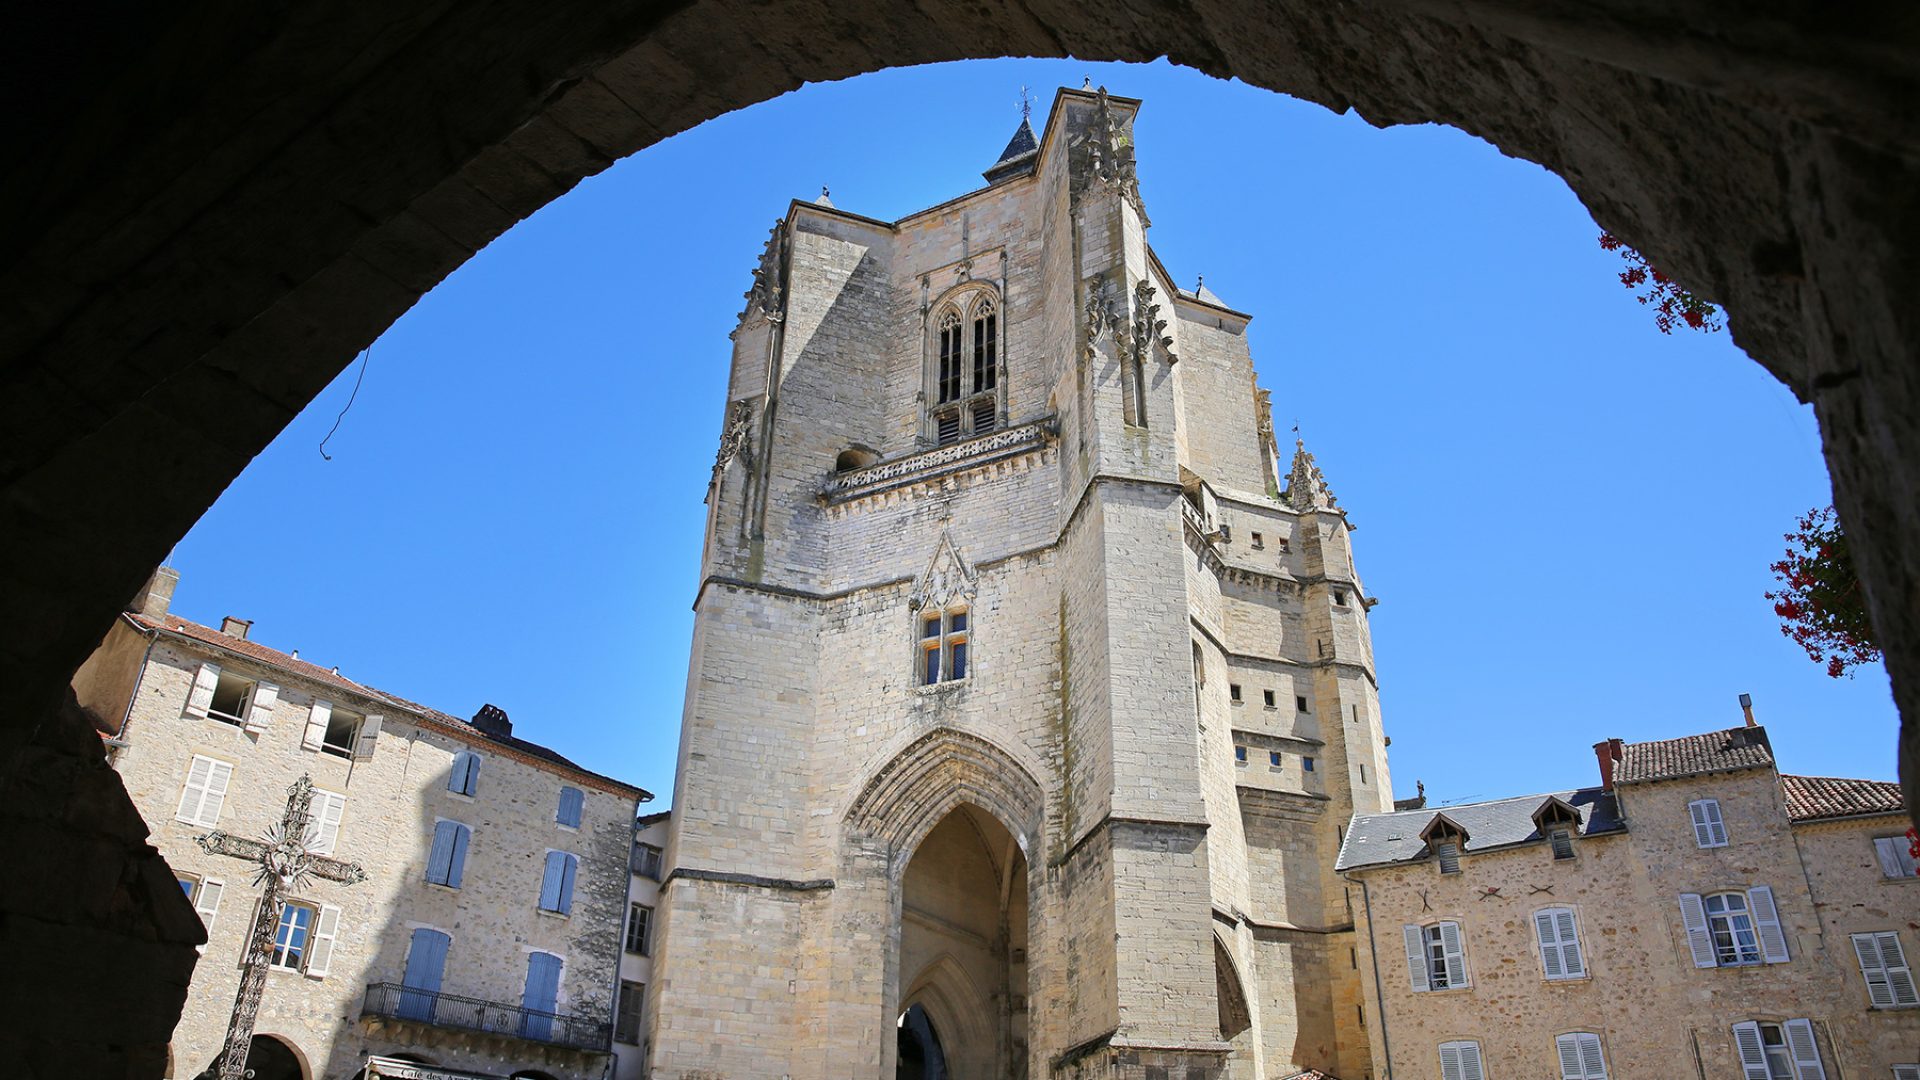 Notre Dame Collegiate Church in Villefranche